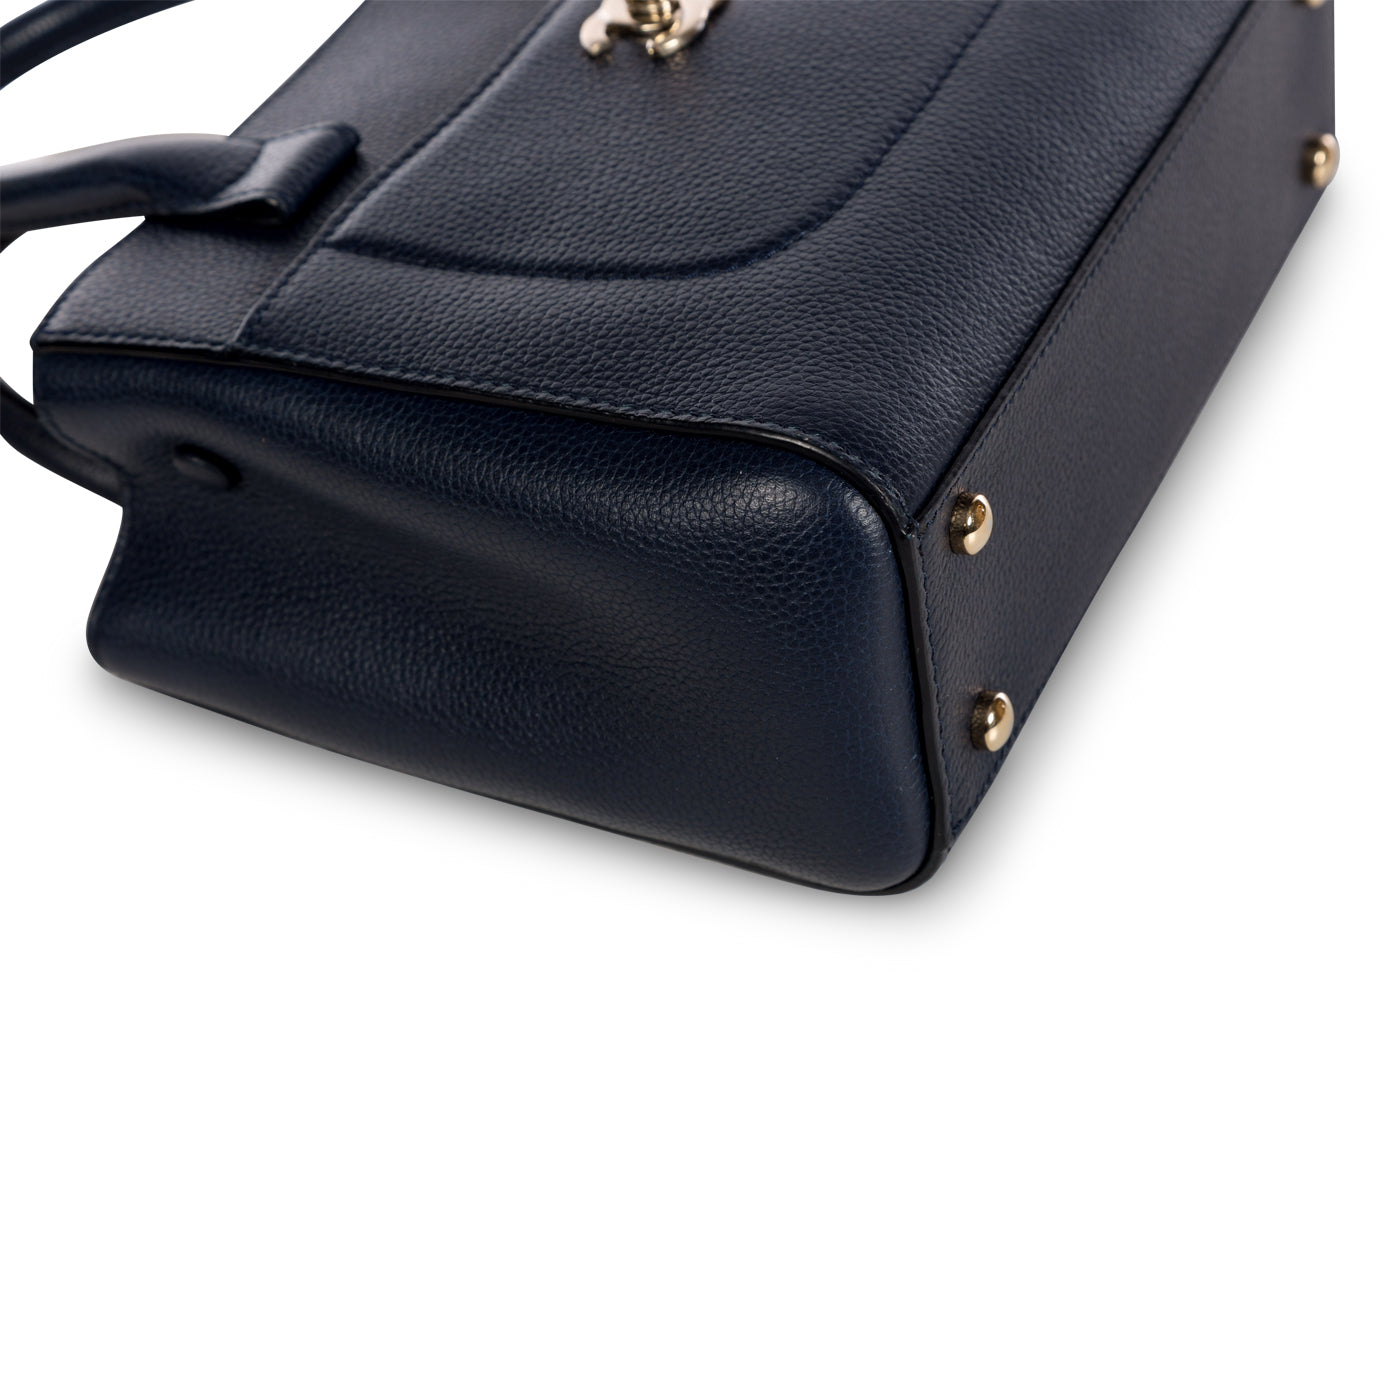 Chanel - Neo Executive Mini Shopping Bag - Navy